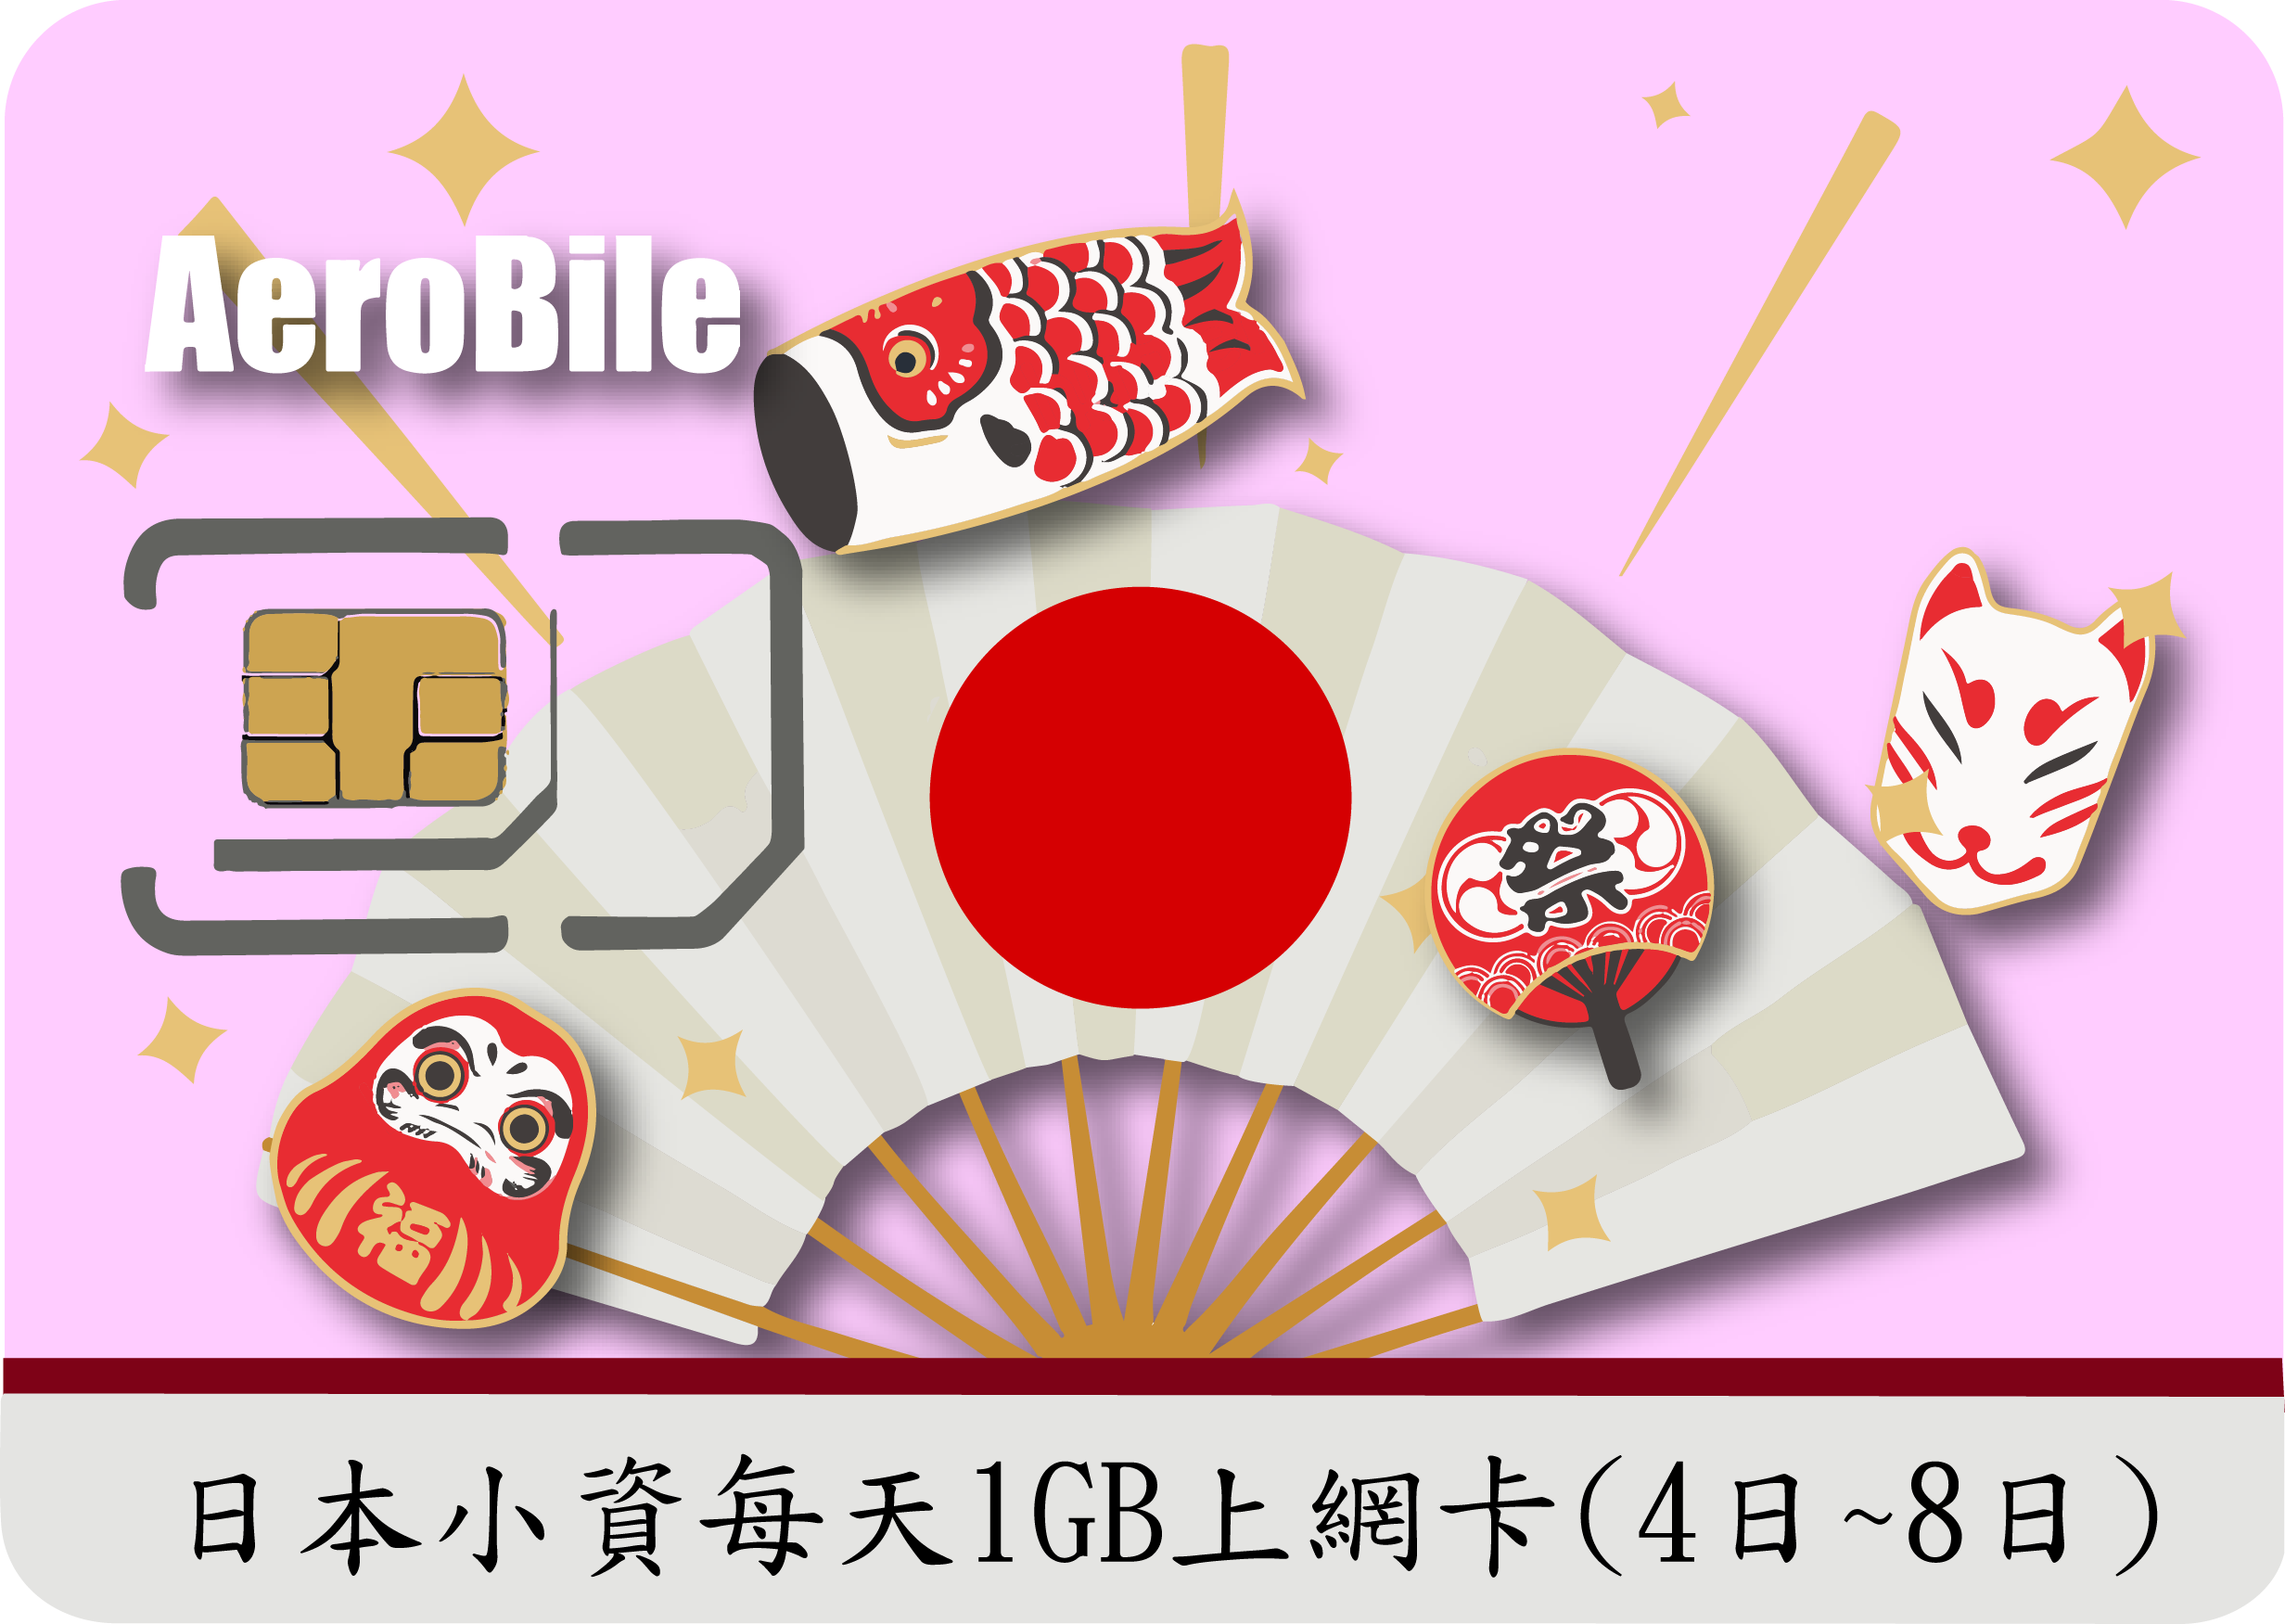 日本小資旅遊上網卡(每日前1GB高速)(B)無法熱點分享(4天至8天)